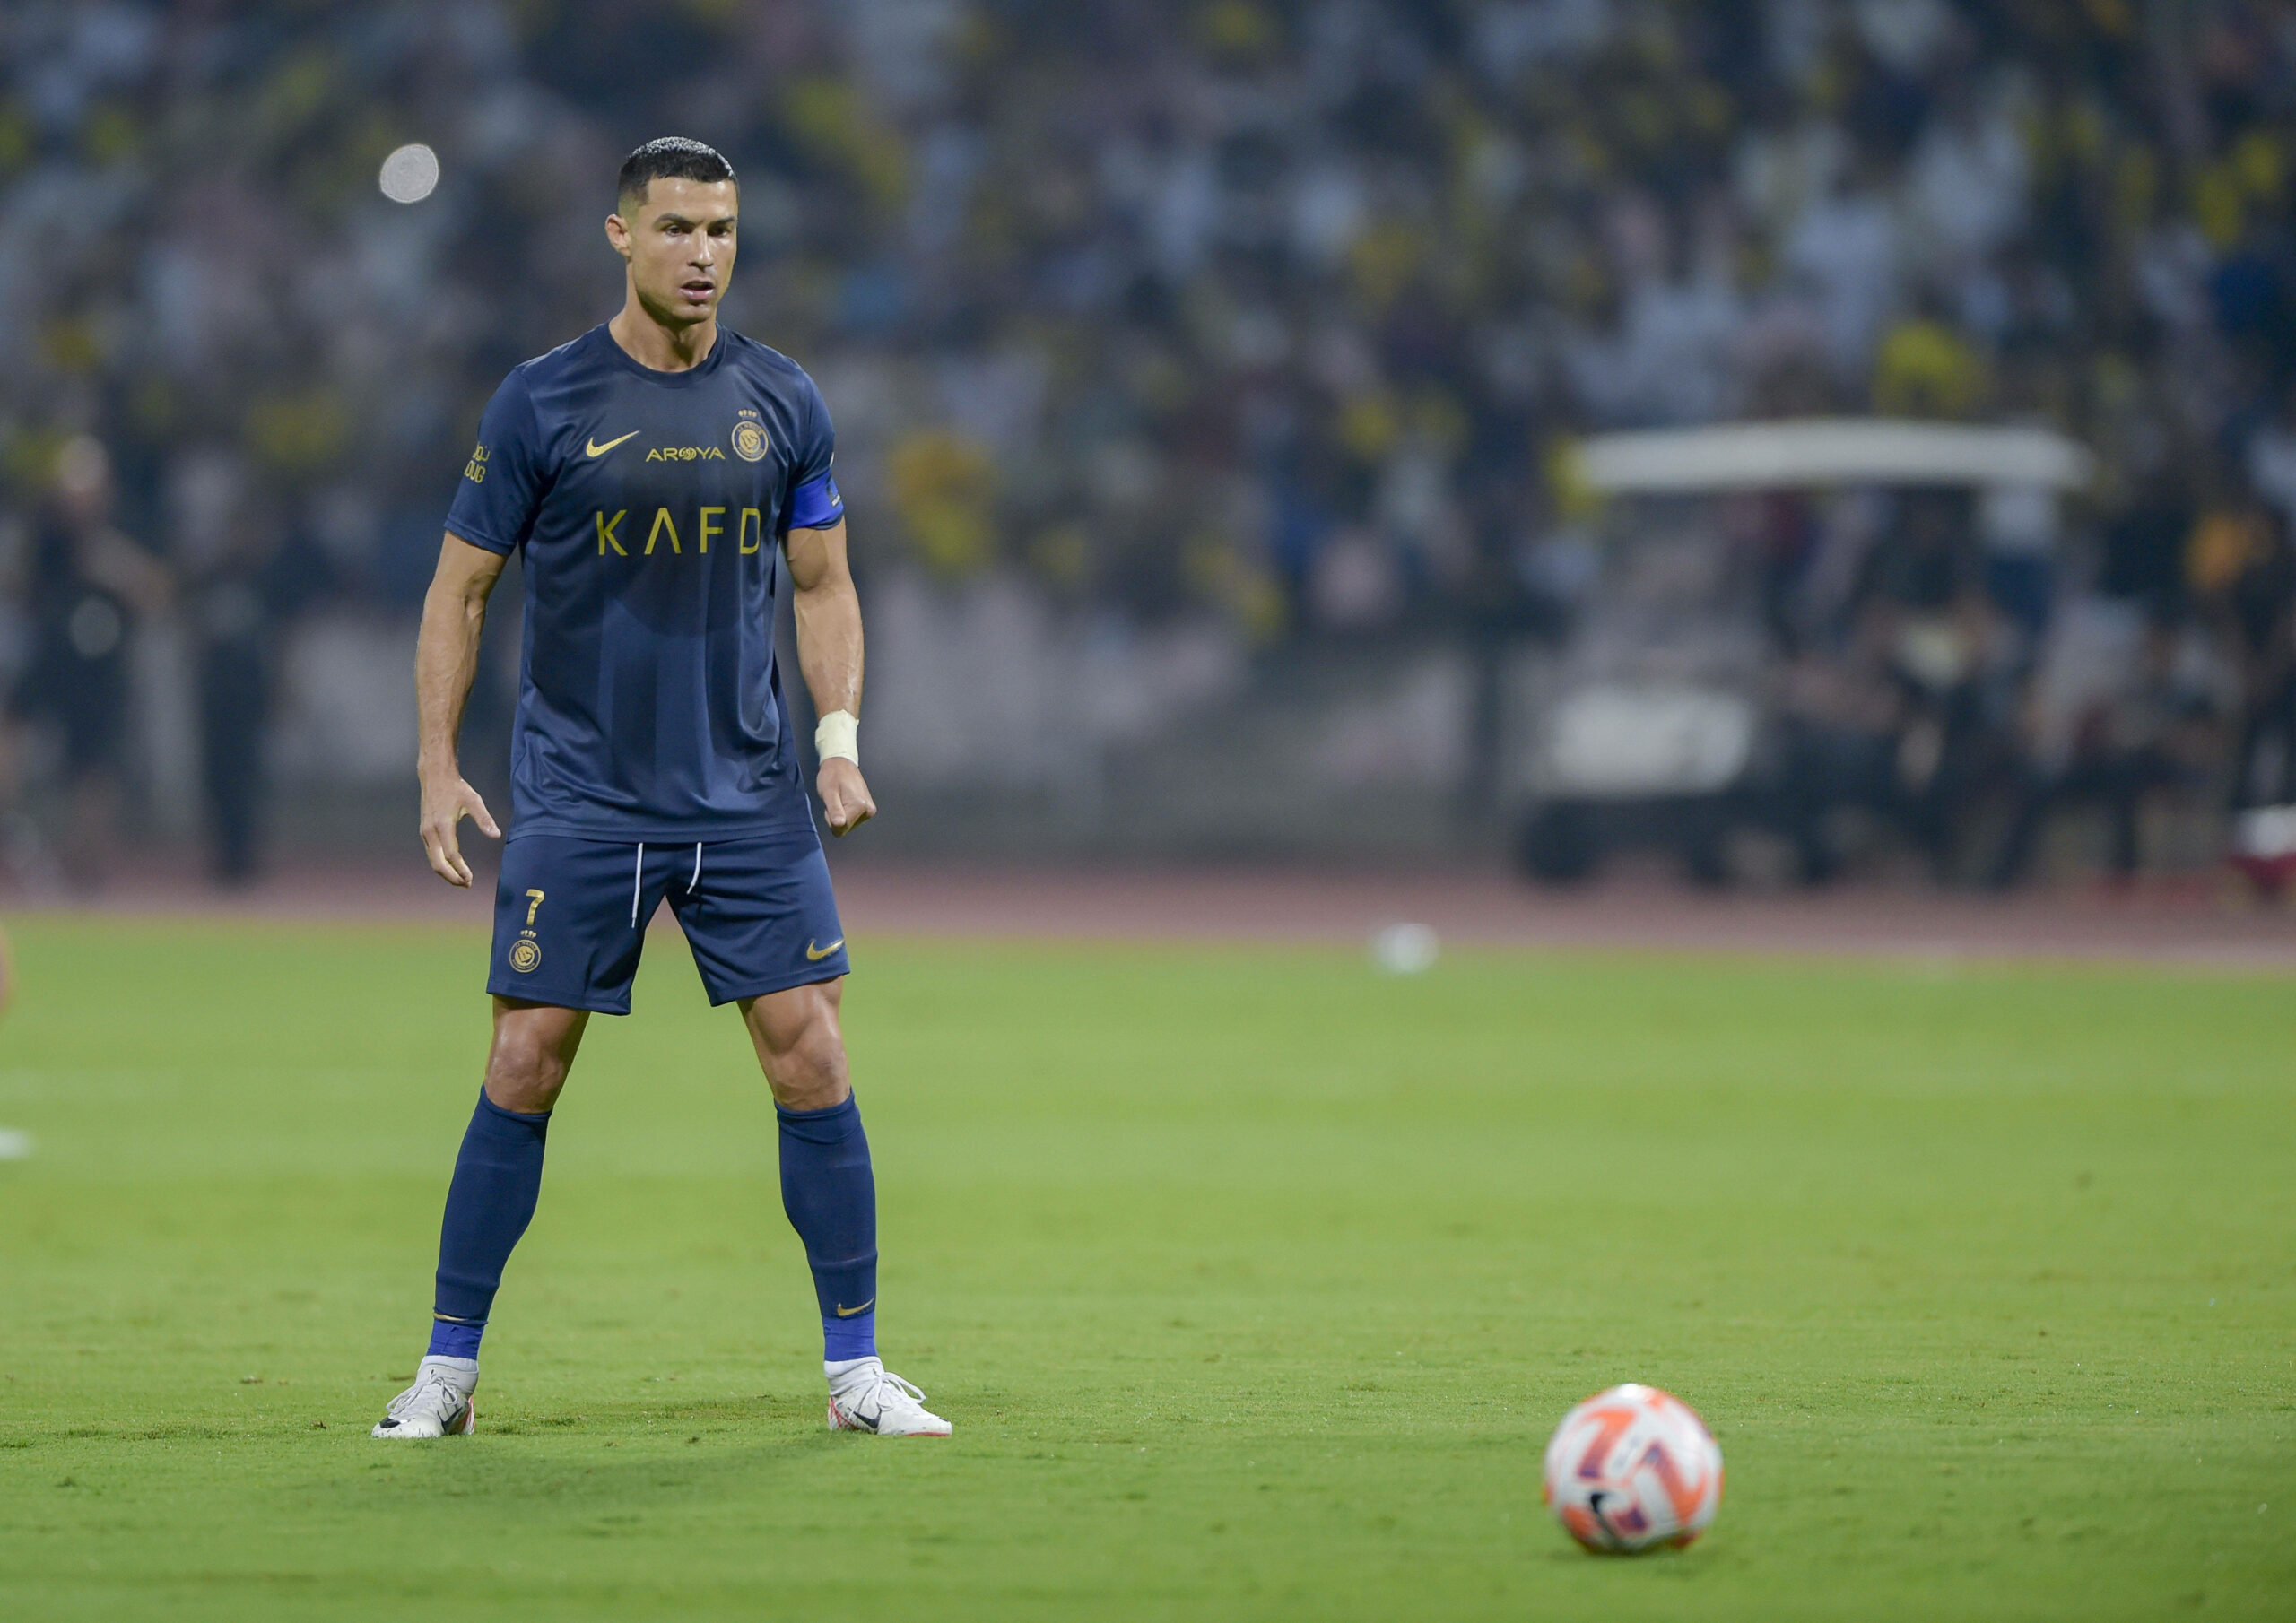 Cristiano Ronaldo beim Freistoß, in der für ihn typischen Körperhaltung